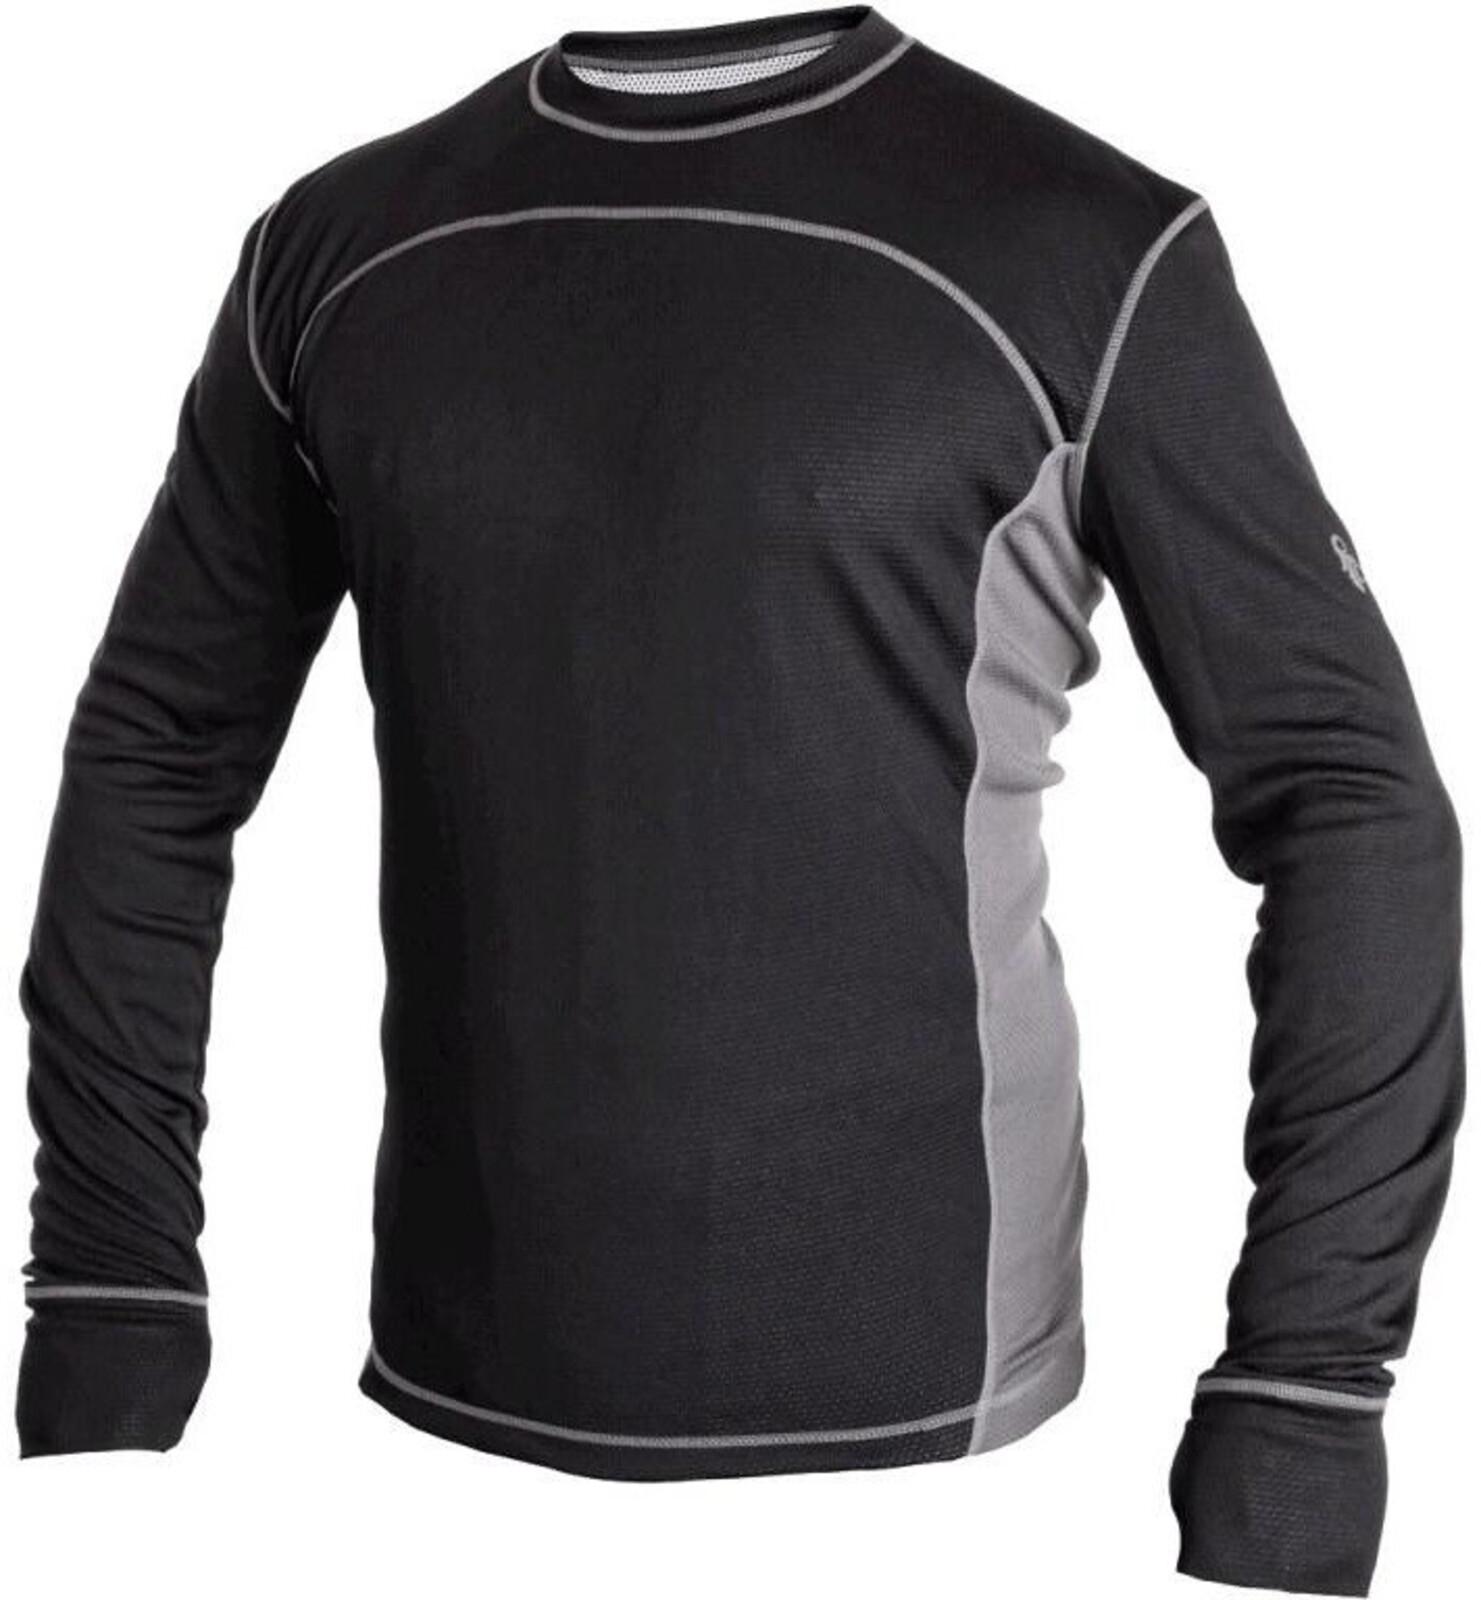 Pánske funkčné tričko s dlhým rukávom CXS Cooldry - veľkosť: L, farba: čierna/sivá